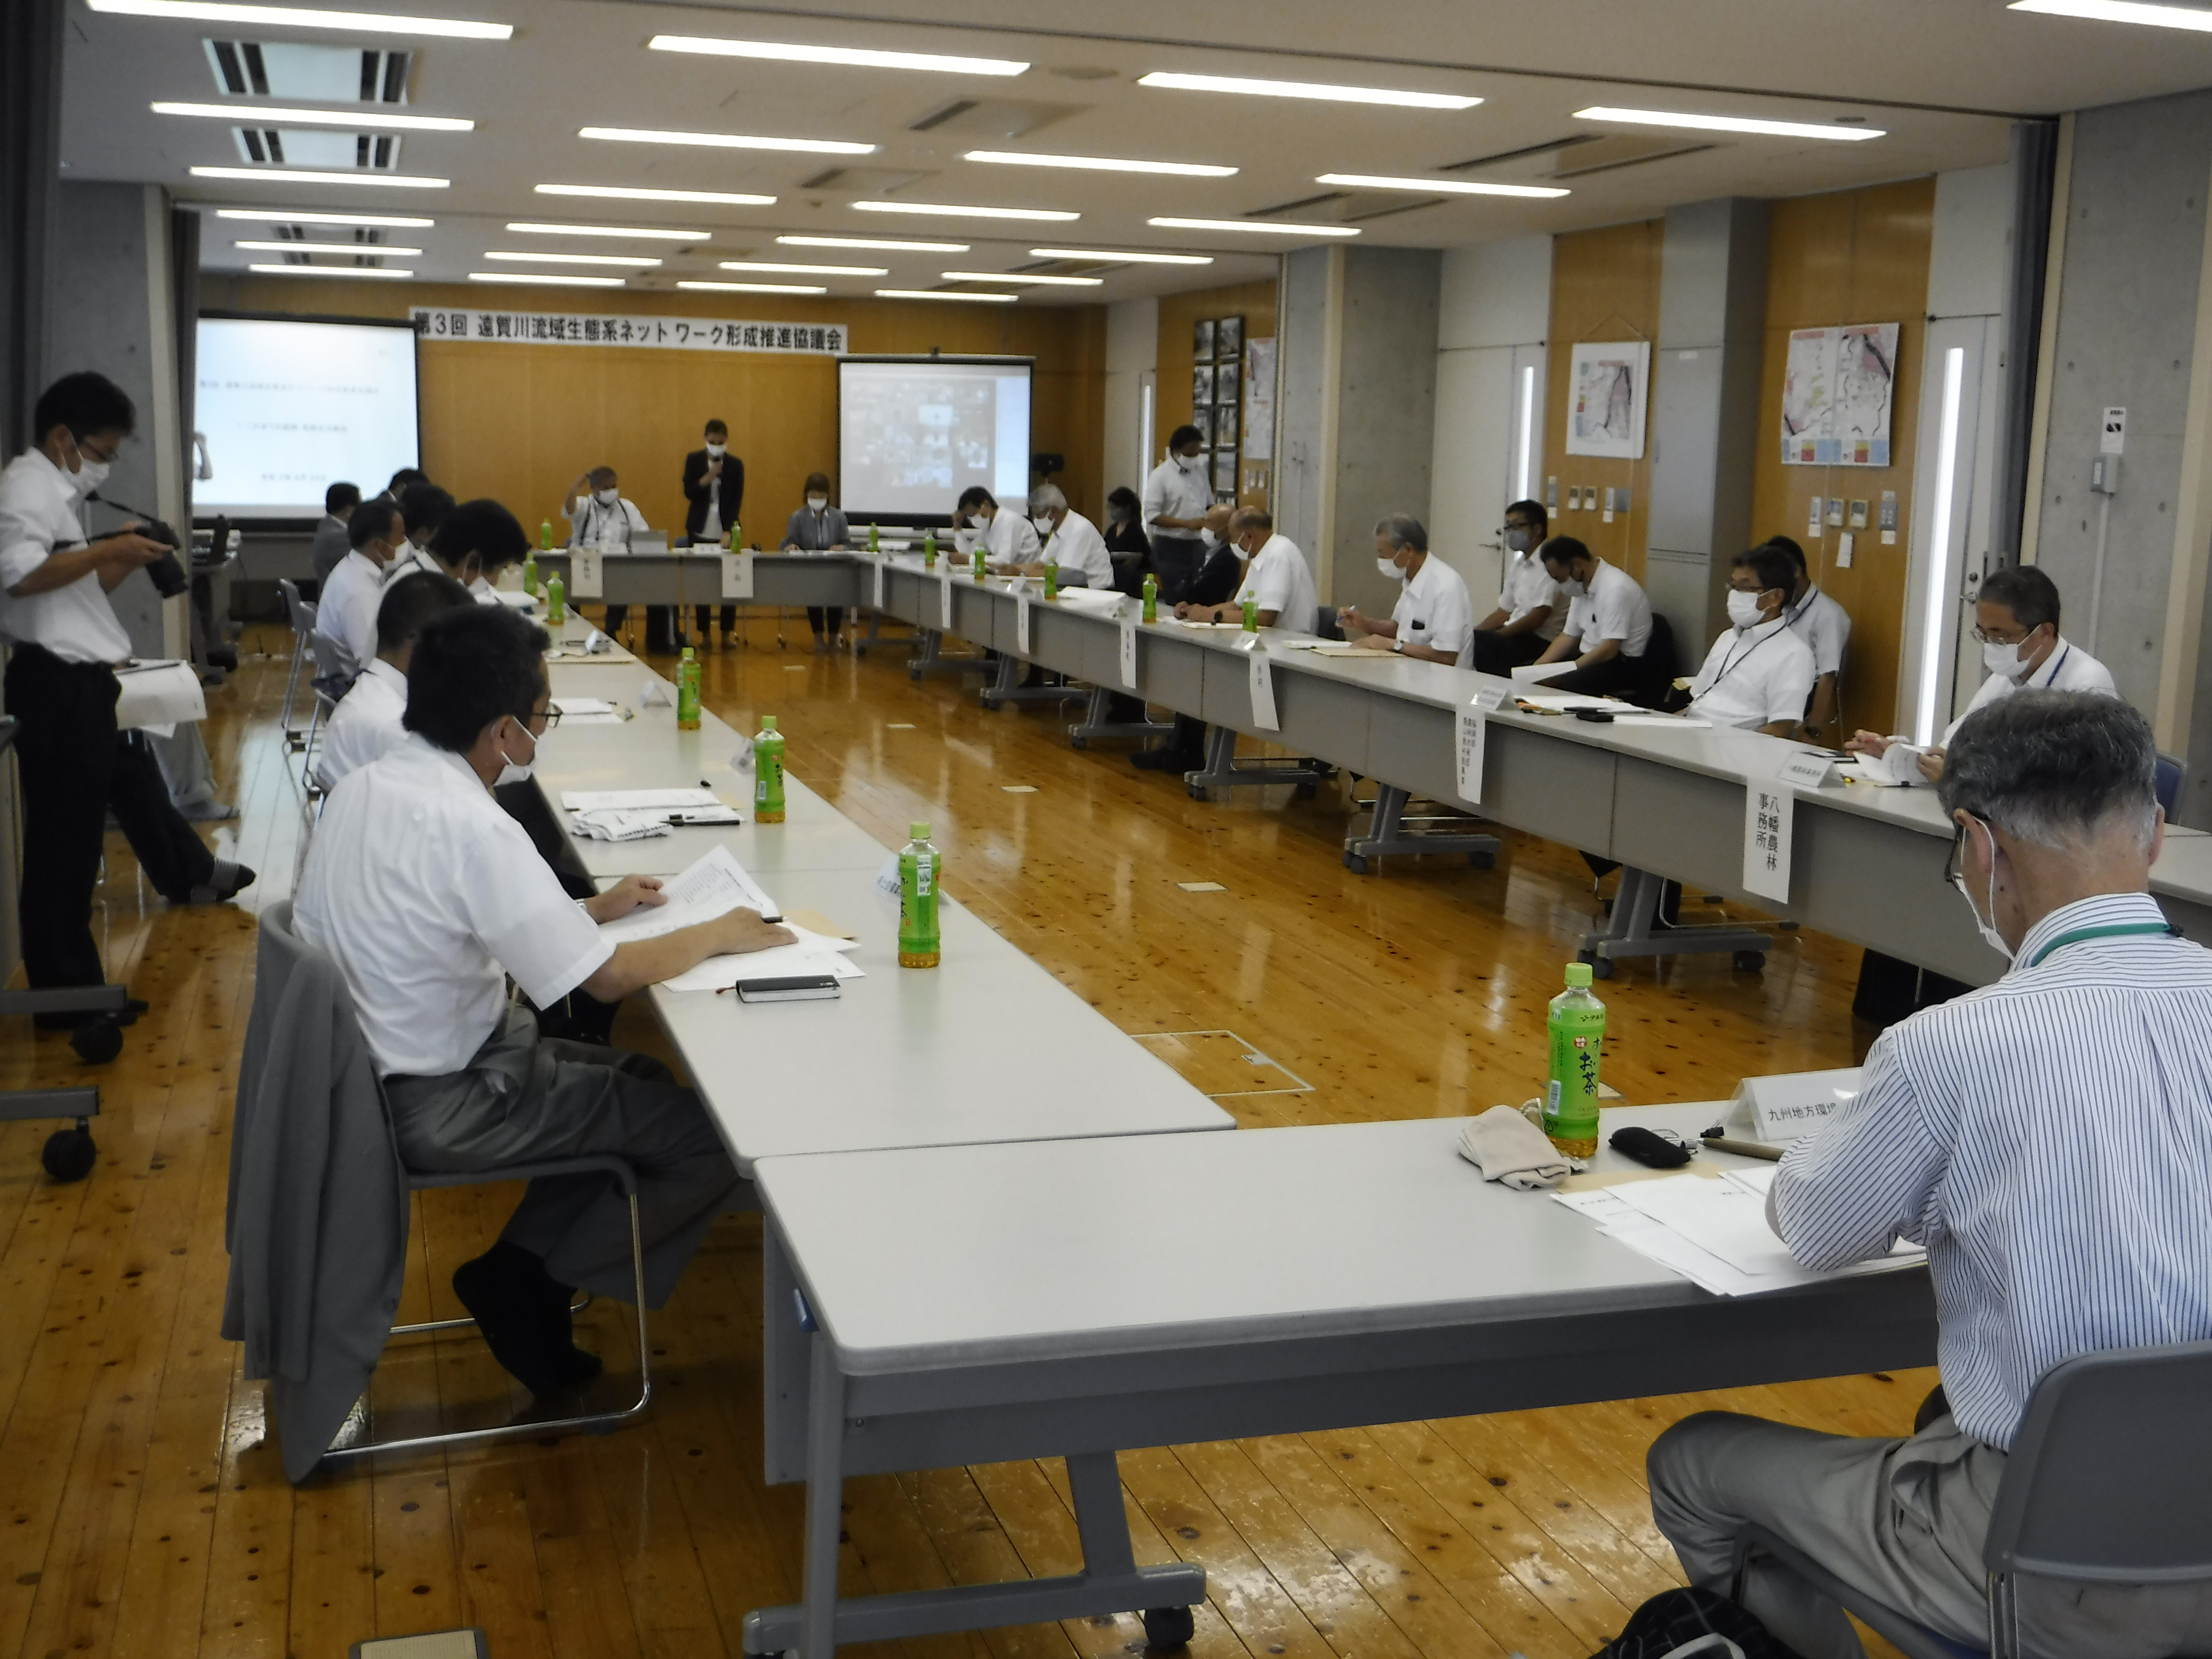 08.24_第3回遠賀川流域生態系ネットワーク形成推進協議会